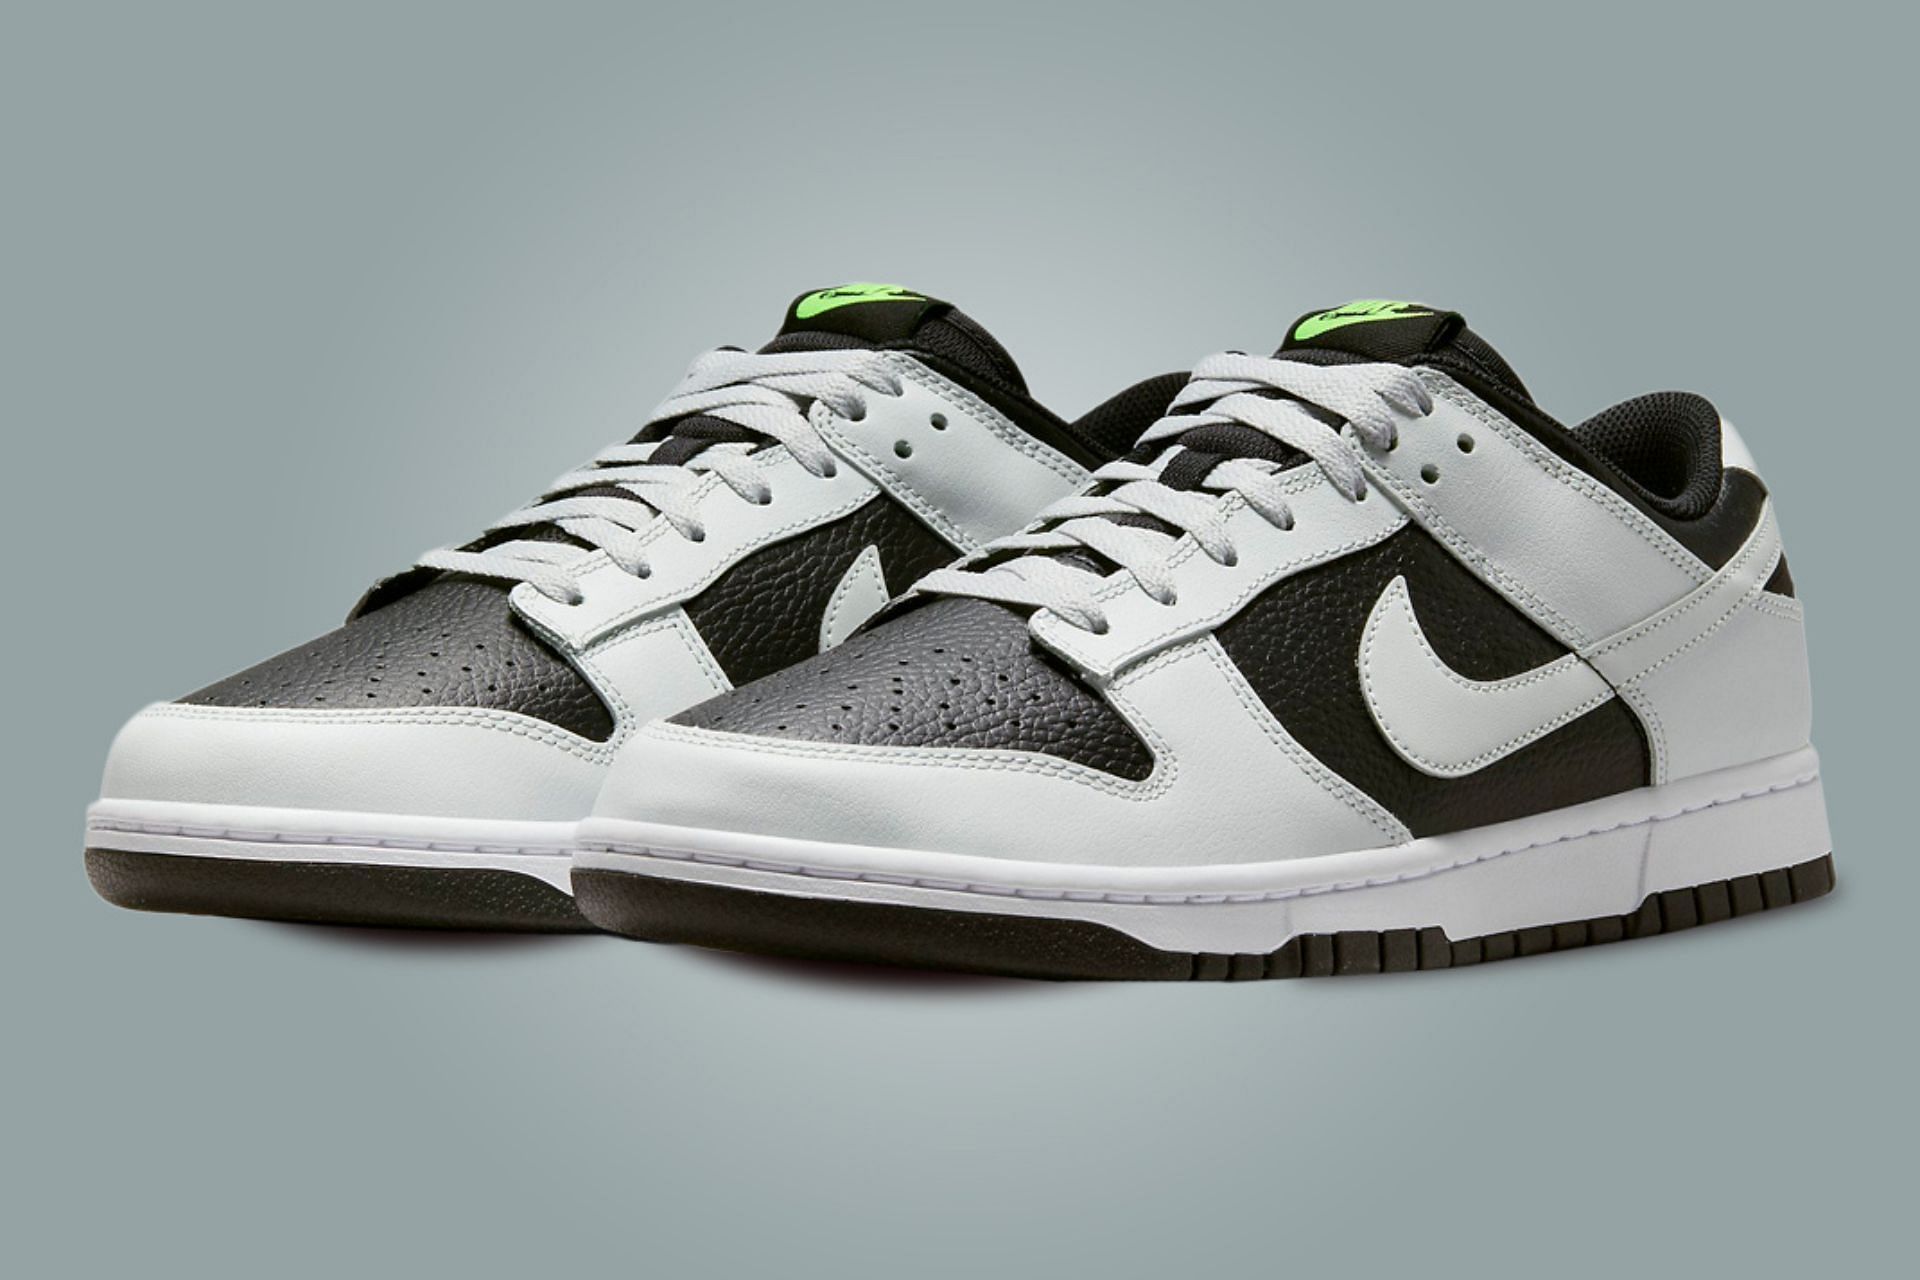 Reverse Panda Where to buy Nike Dunk Low “Reverse Panda Neon” shoes